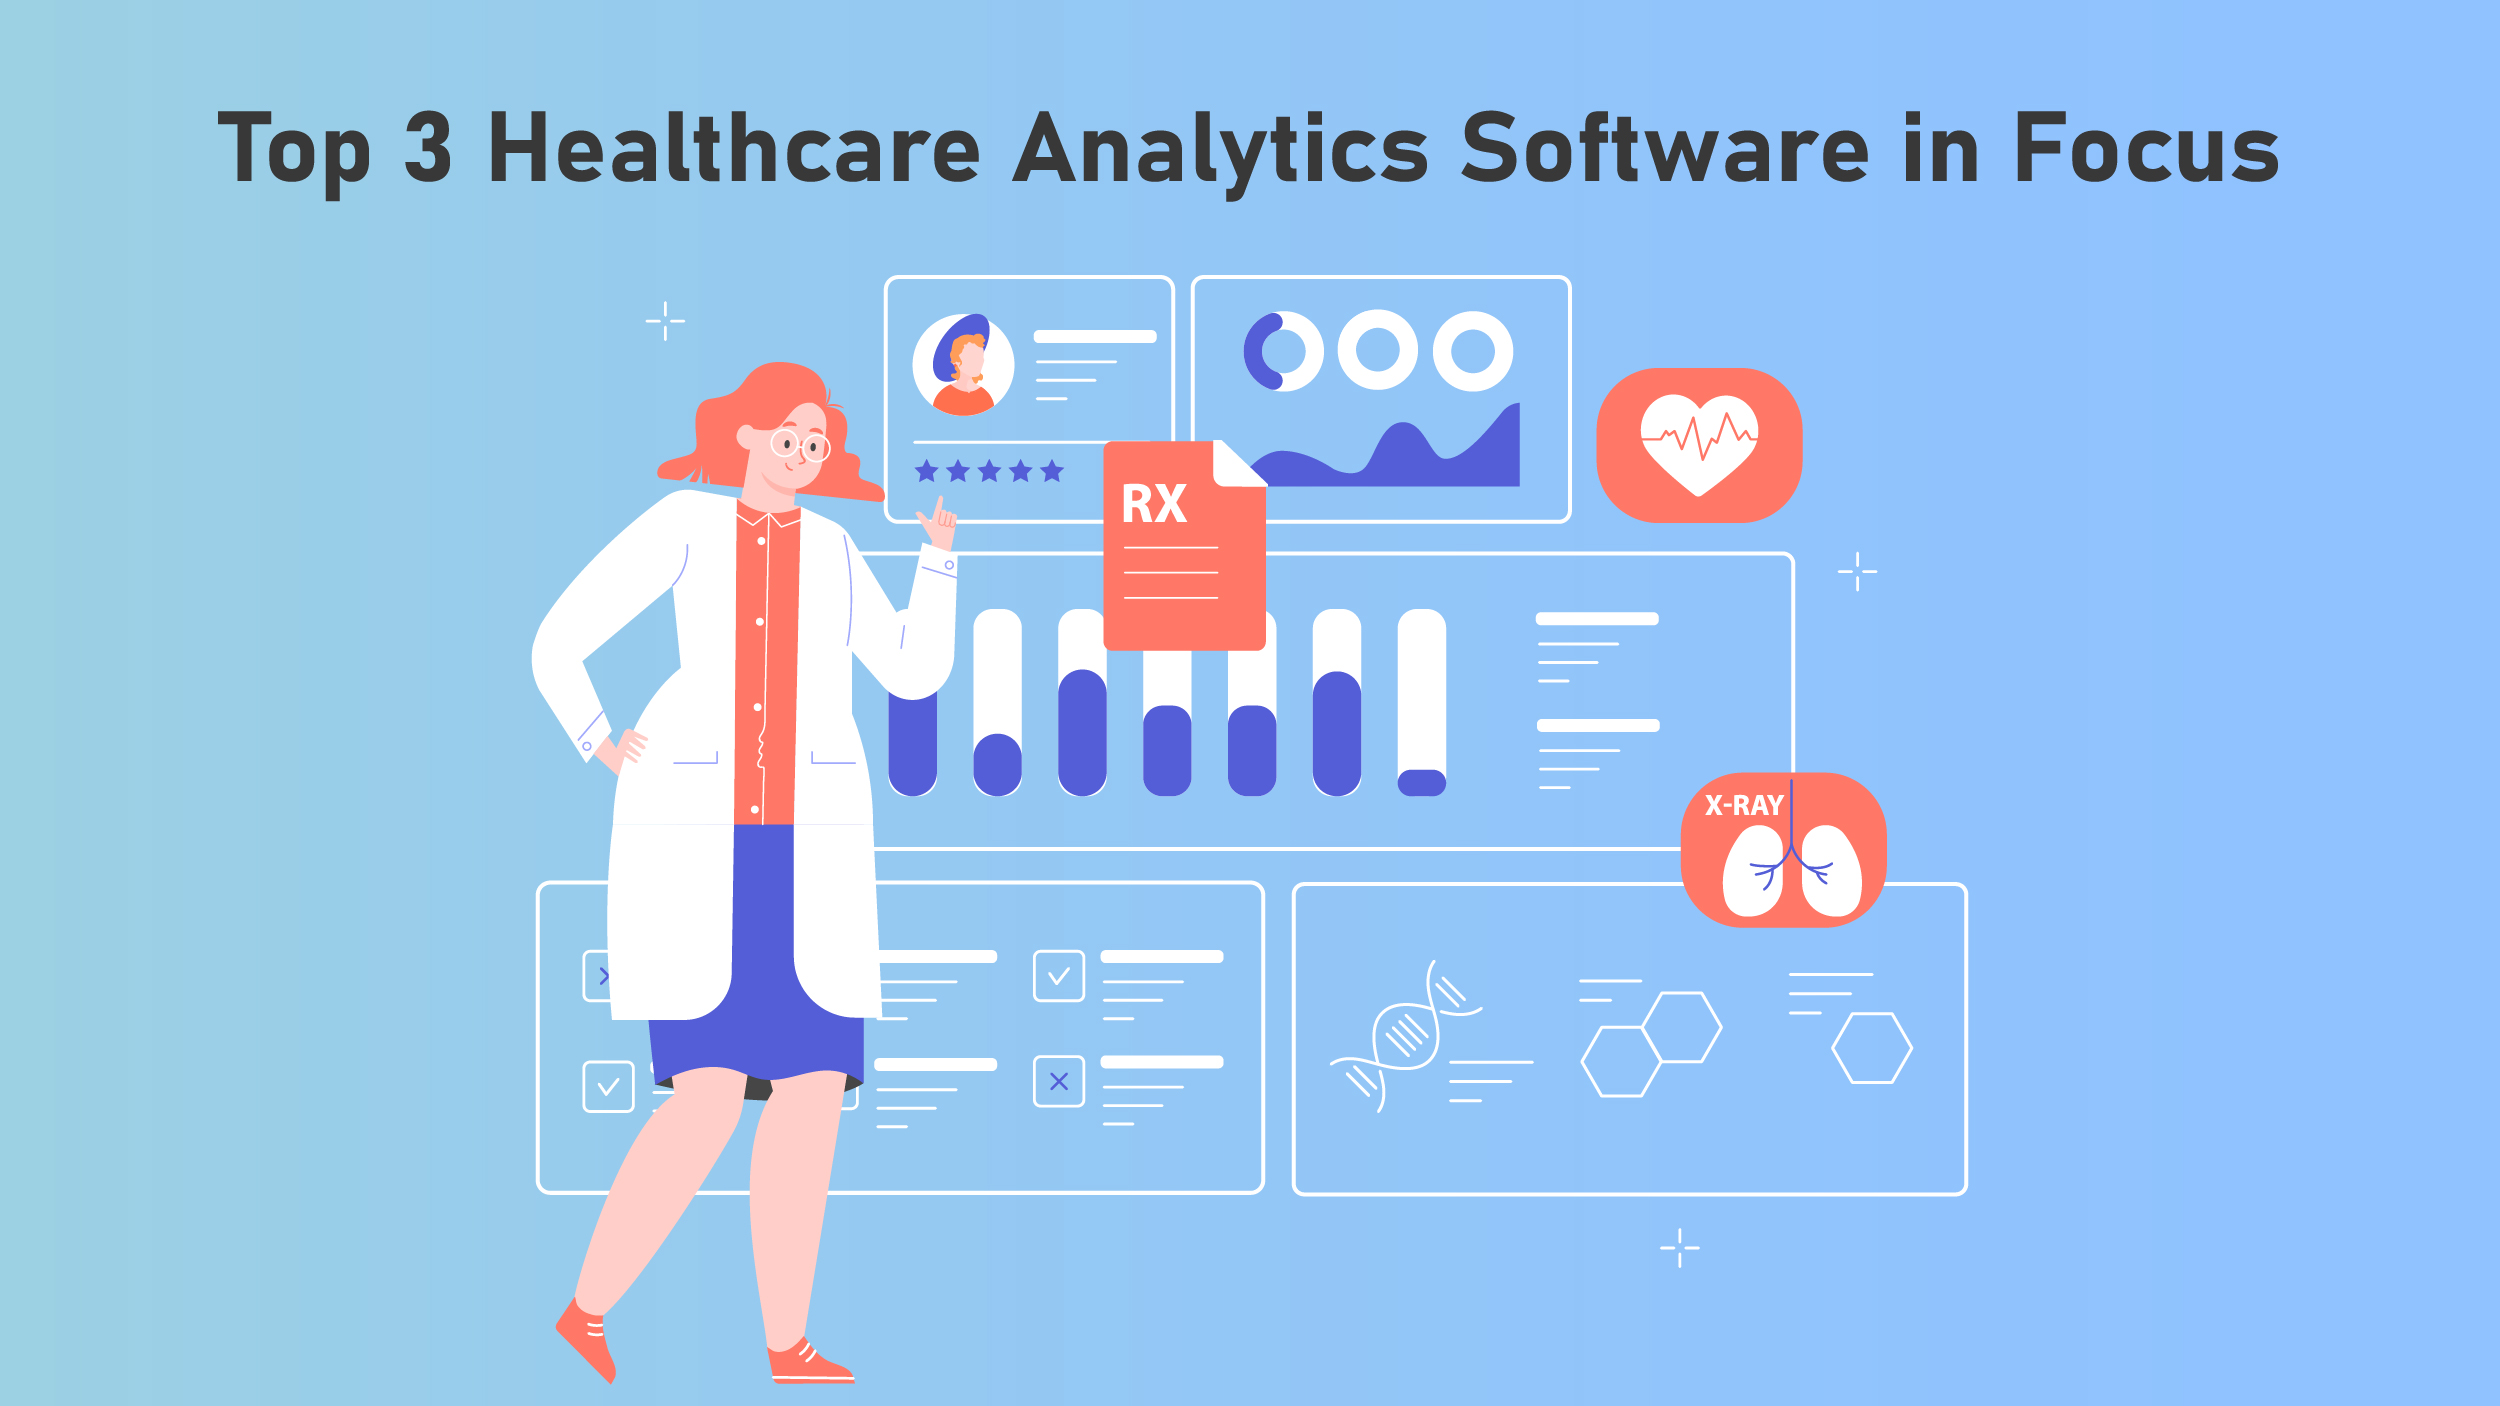 Healthcare-analytics